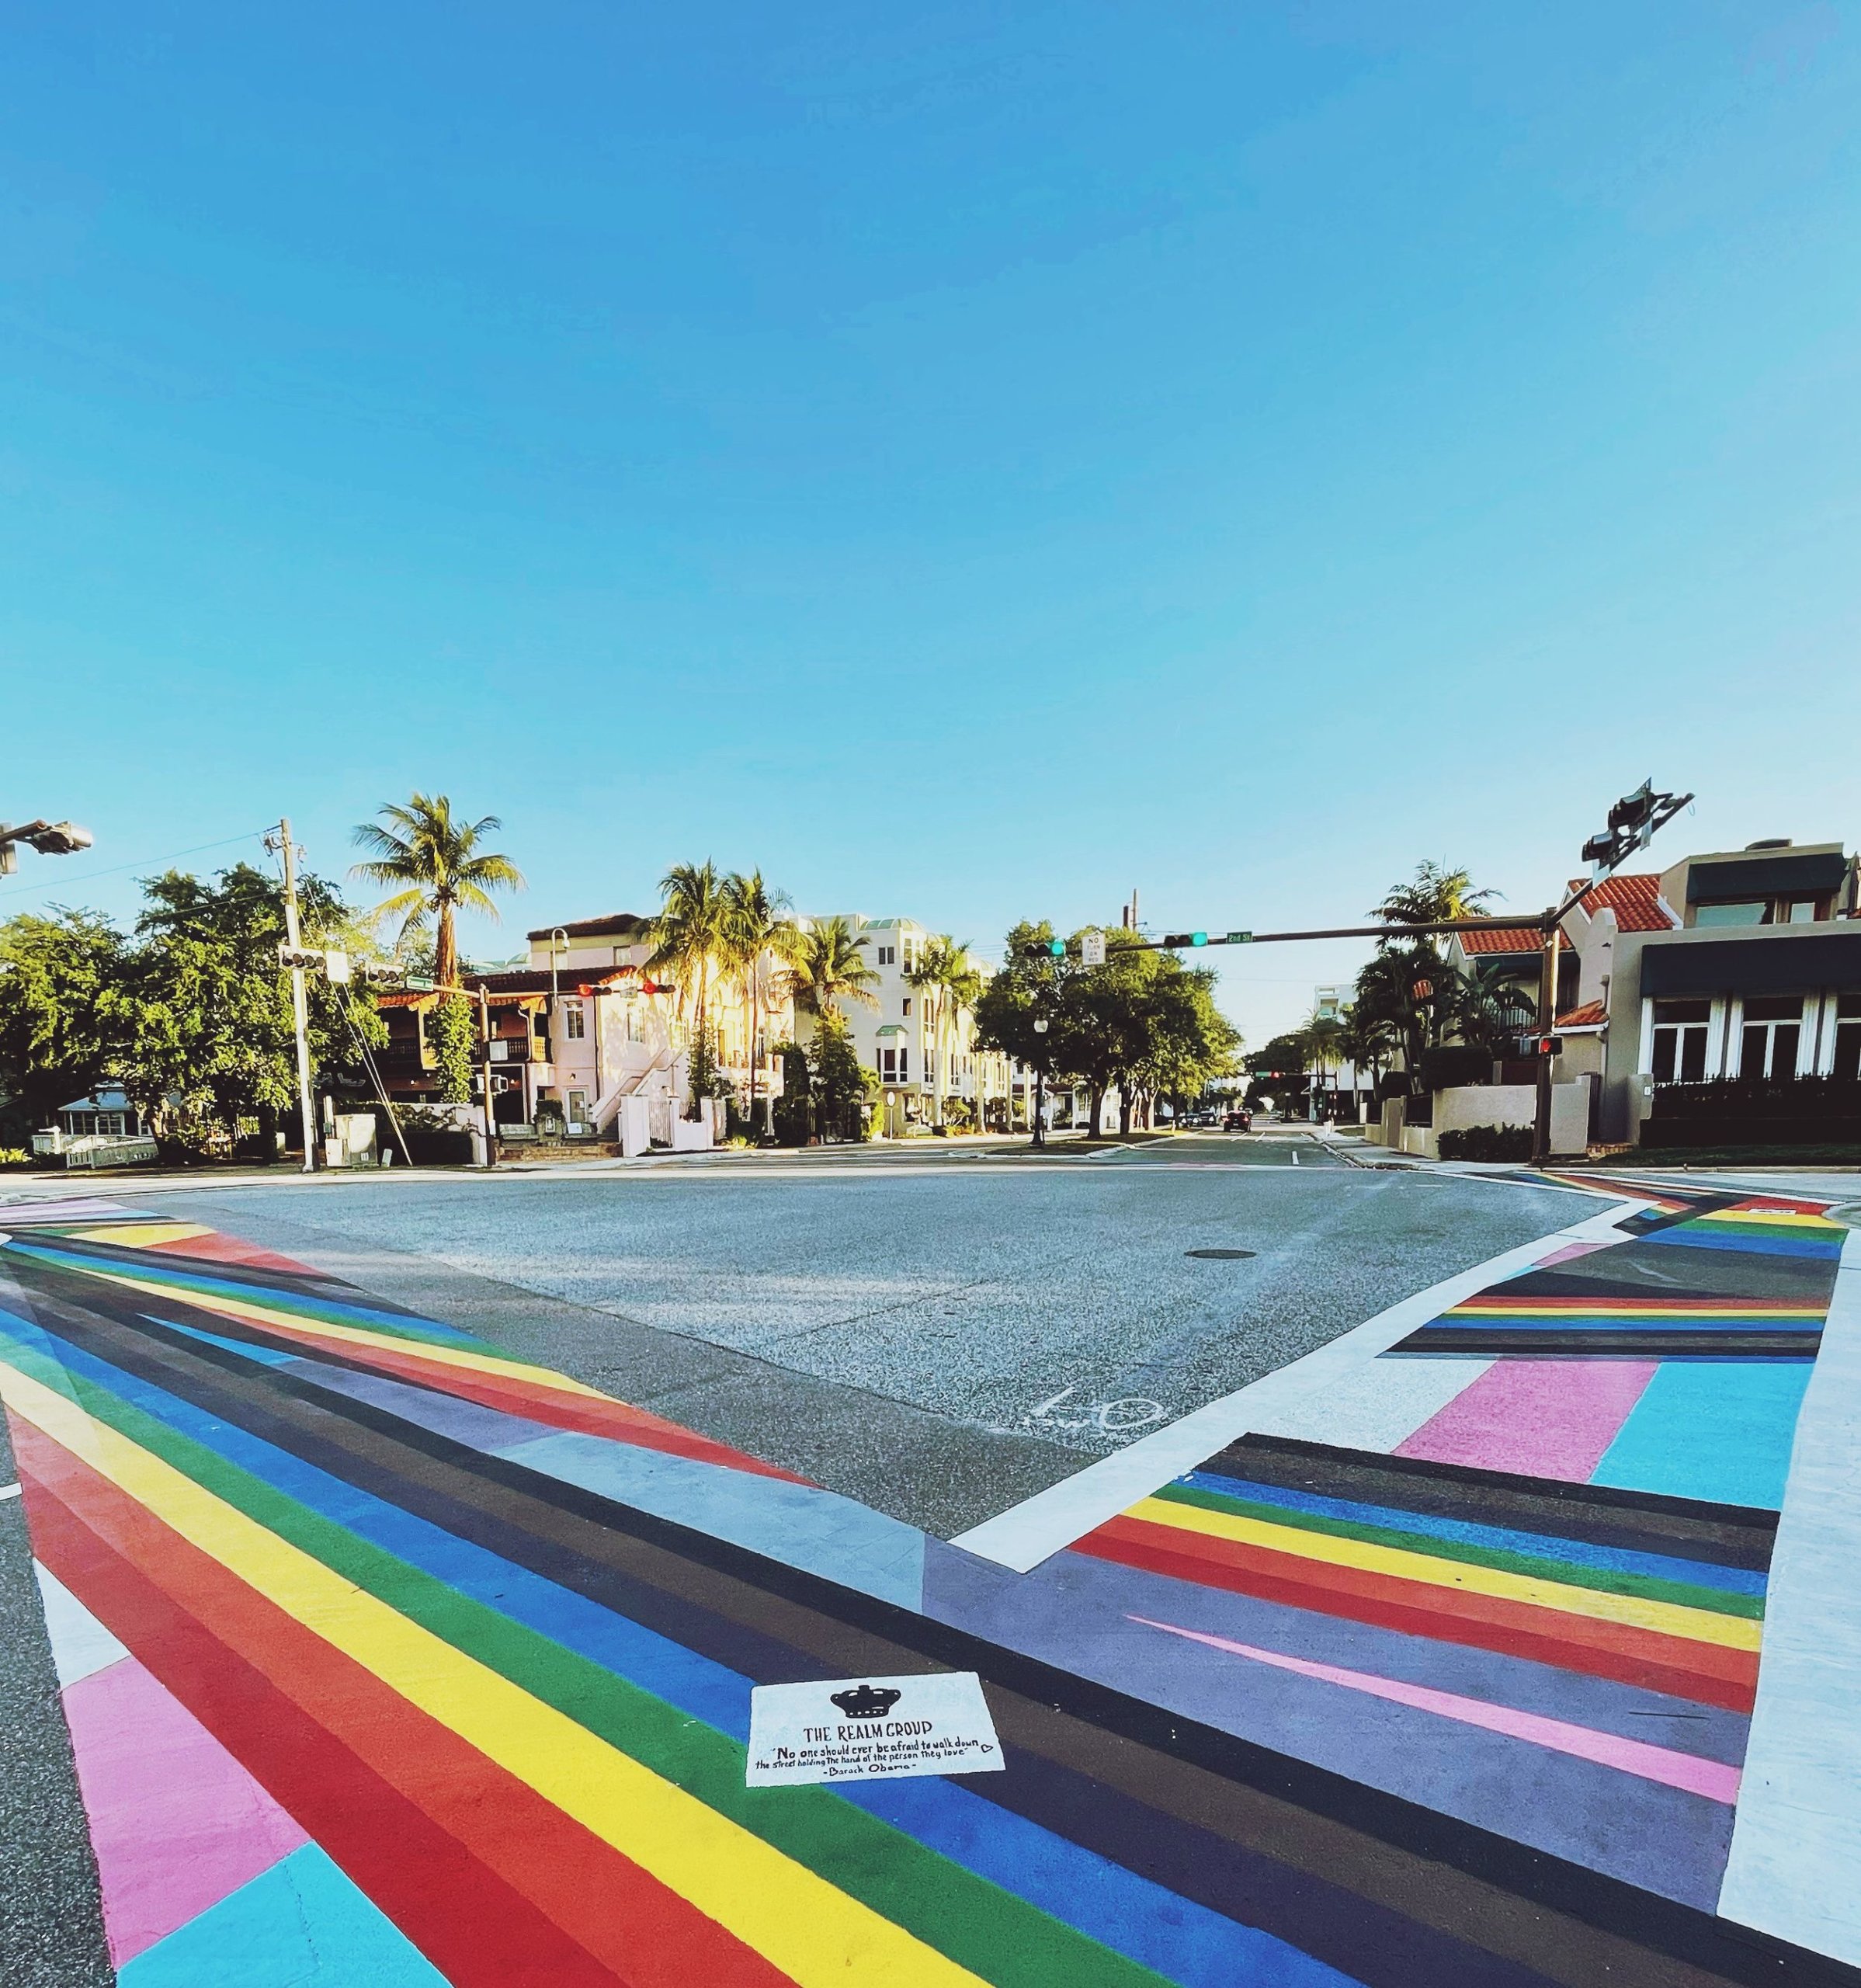 Street crosswalks painted as various pride flags.